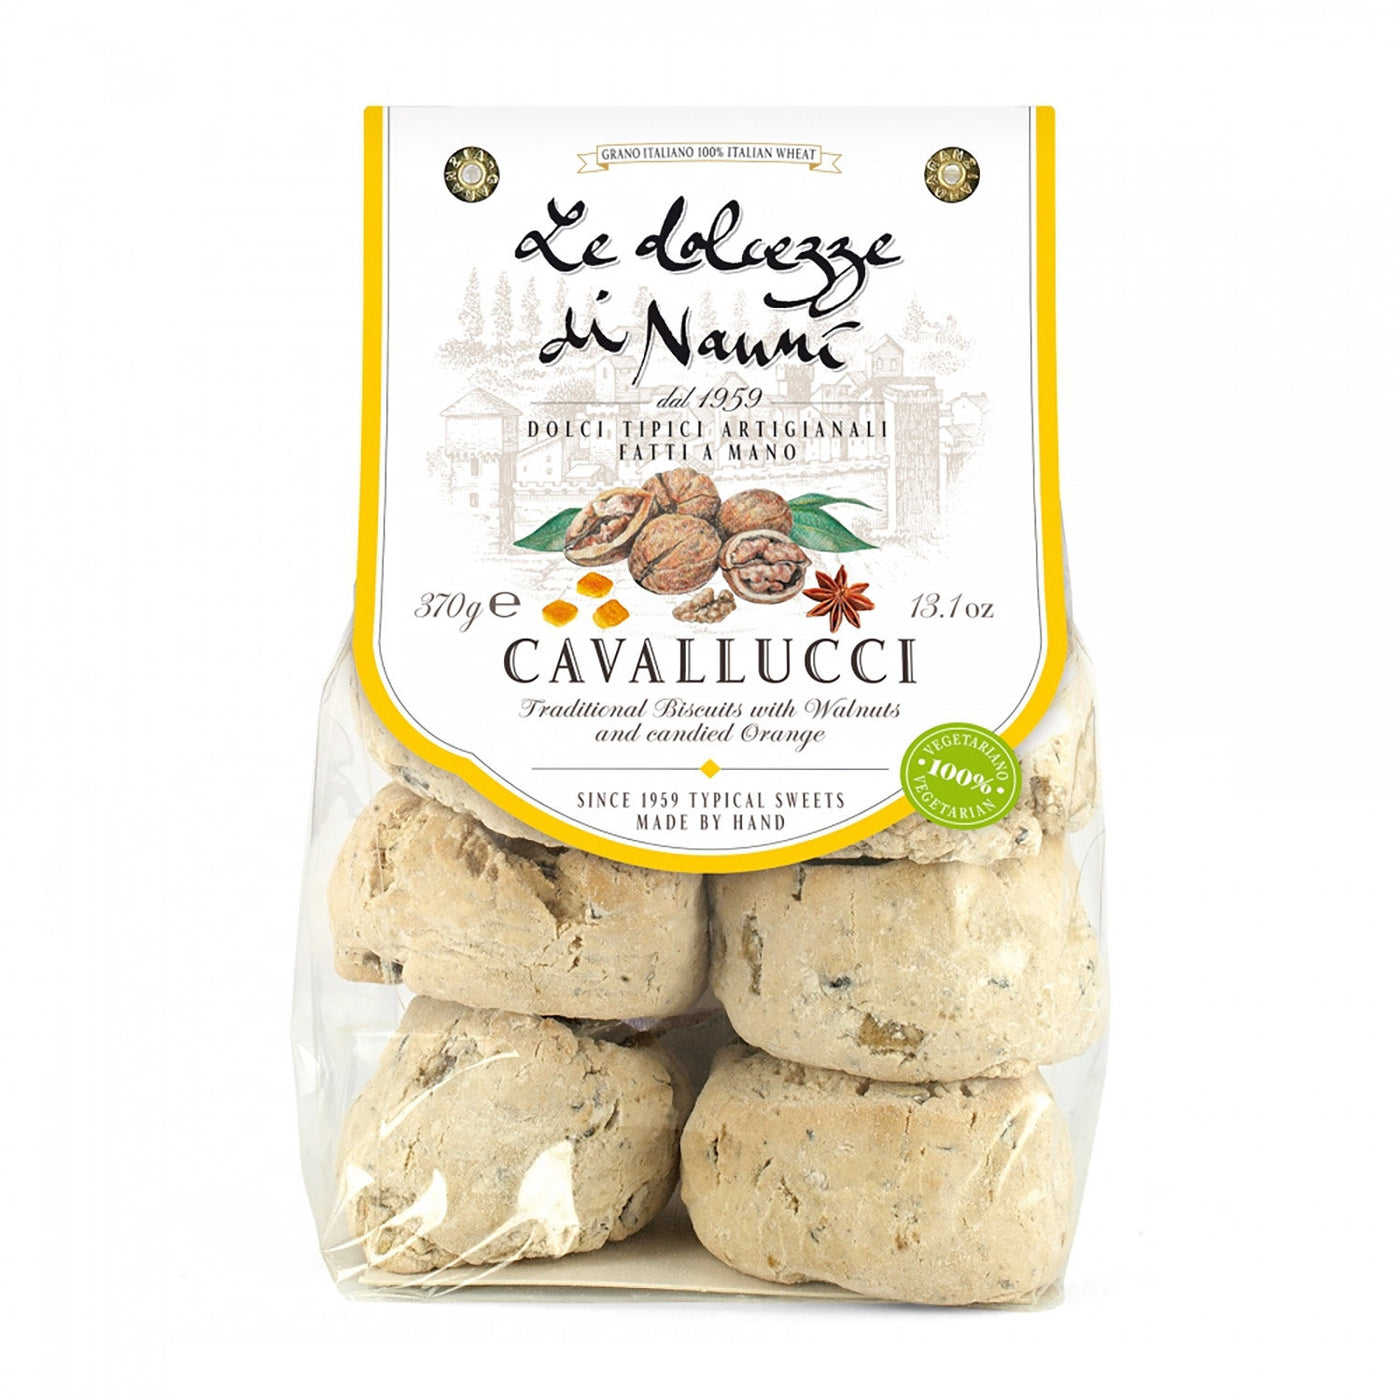 Candied Orange + Walnut Cookies, "Cavallucci", Le Dolcezze Di Nanni, 13.1 oz